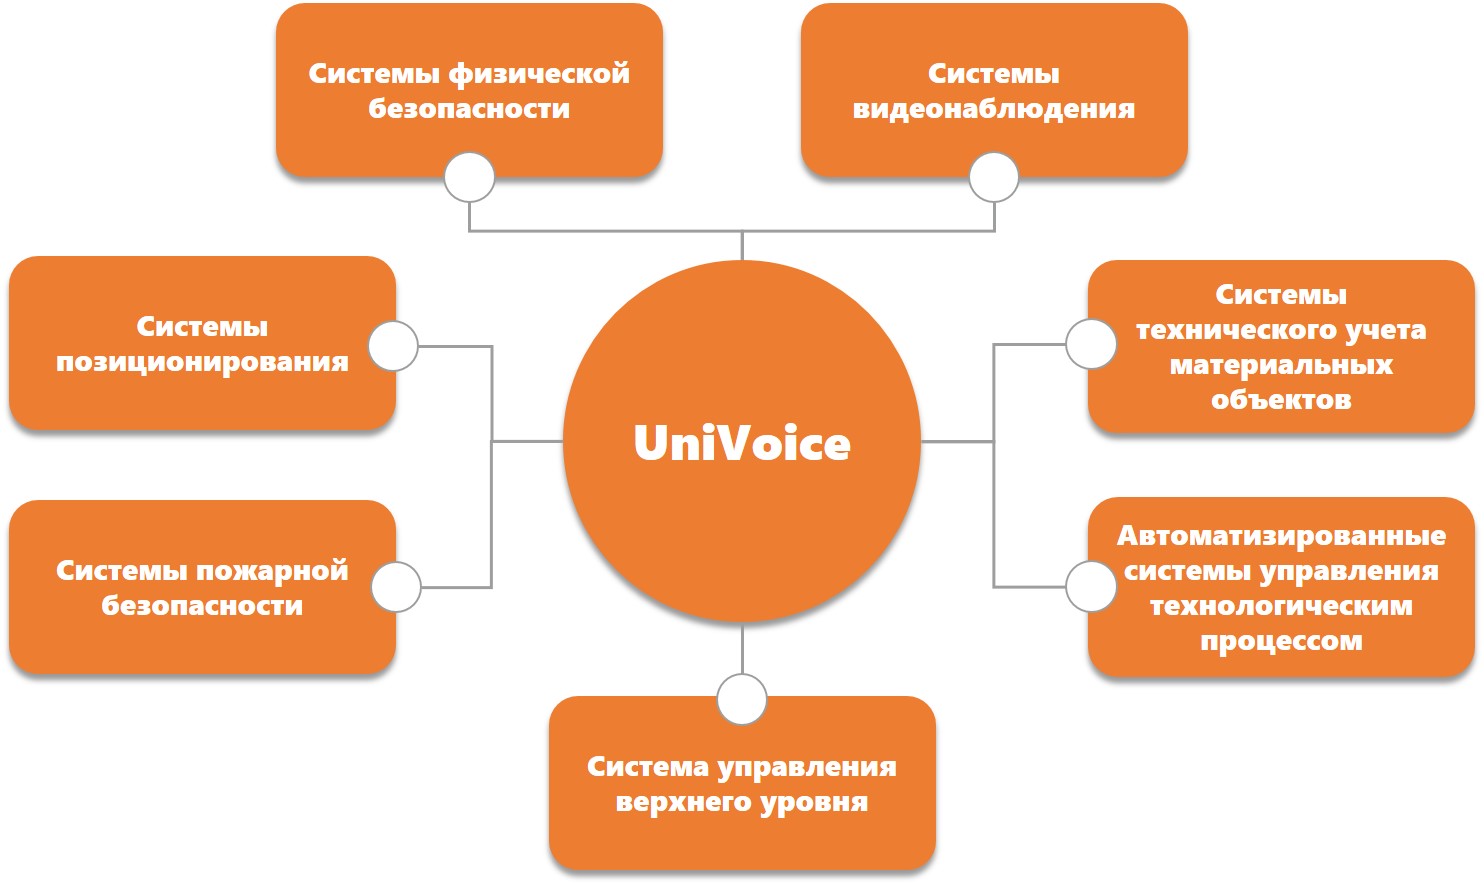 UniVoice Unified Voice Services Platform